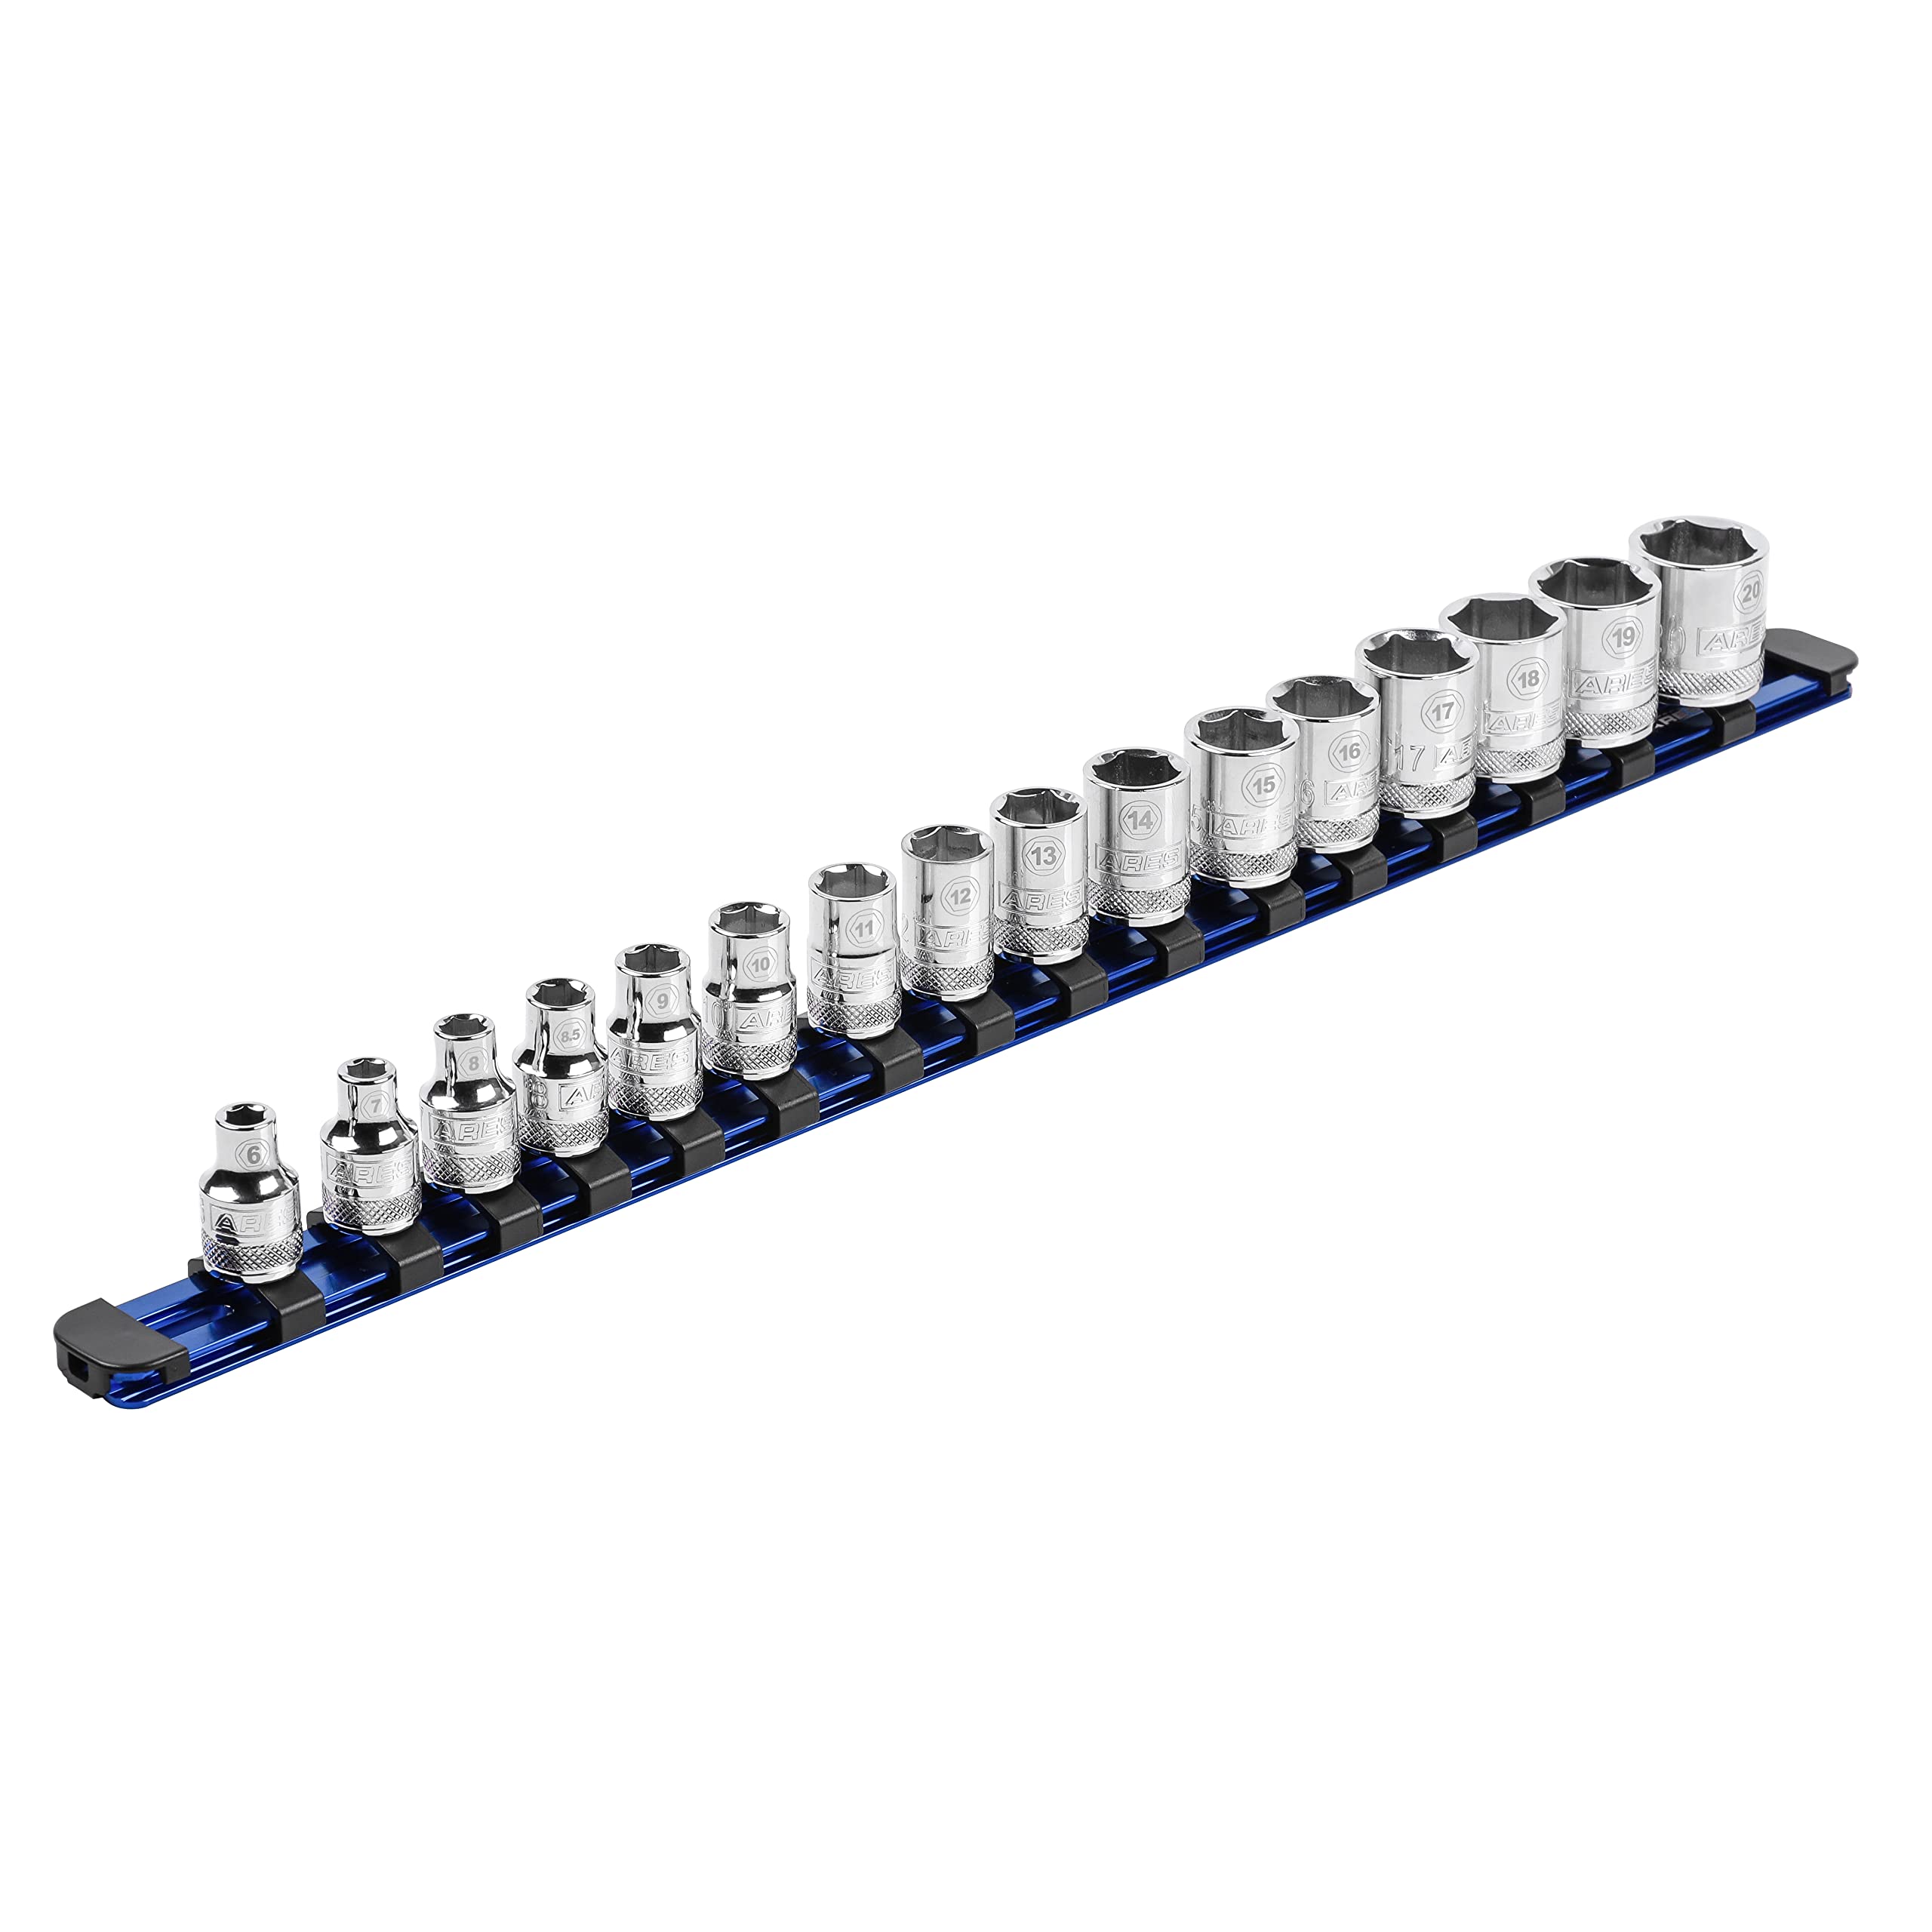 ARES 60117-3/8-Zoll-Antrieb, blau, 43,2 cm Steckschlüsselschiene mit verriegelbaren Endkappen – Aluminiumschiene speichert bis zu 16 Stecknüsse und hält Ihren Werkzeugkasten organisiert